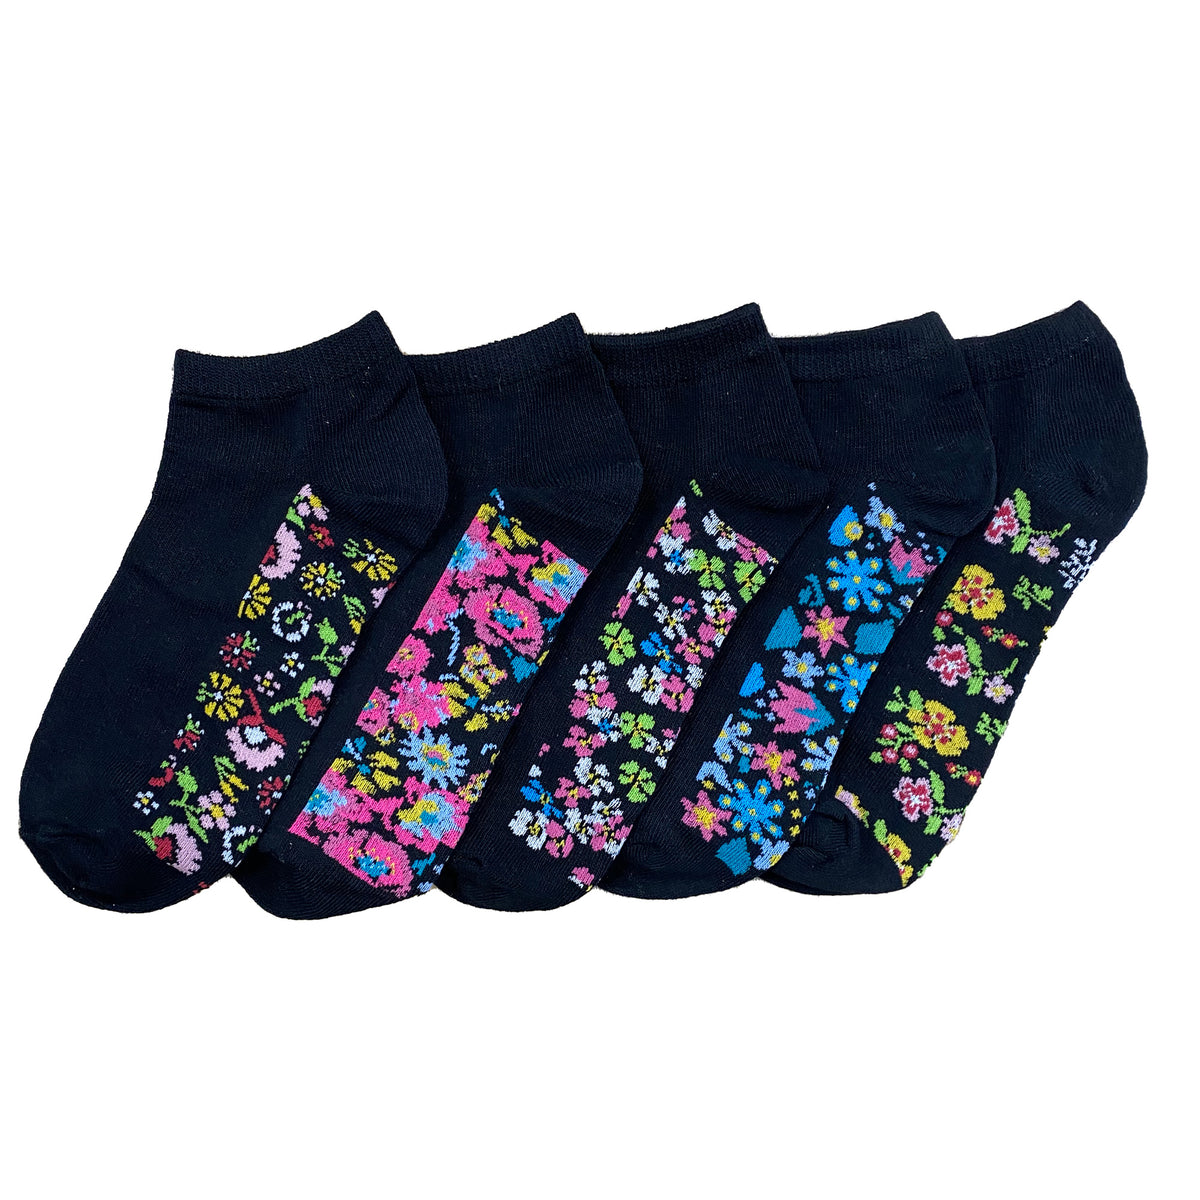 Floral Footbed Design Trainer Liner Socks 5 Pack